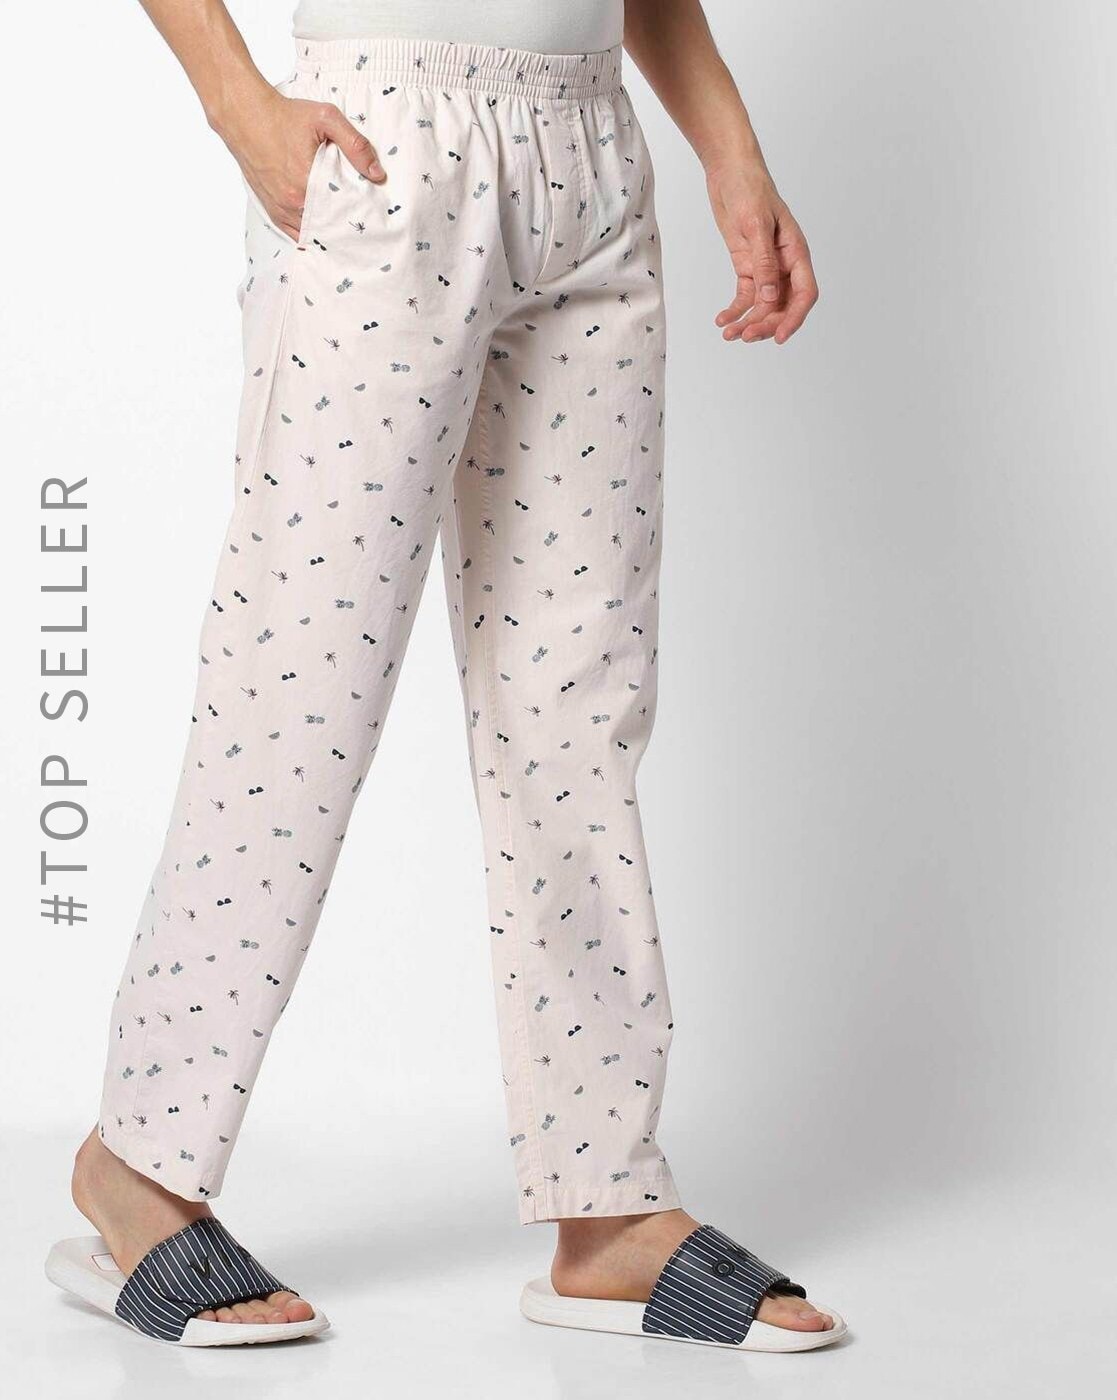 White - cotton - pyjama pant for men